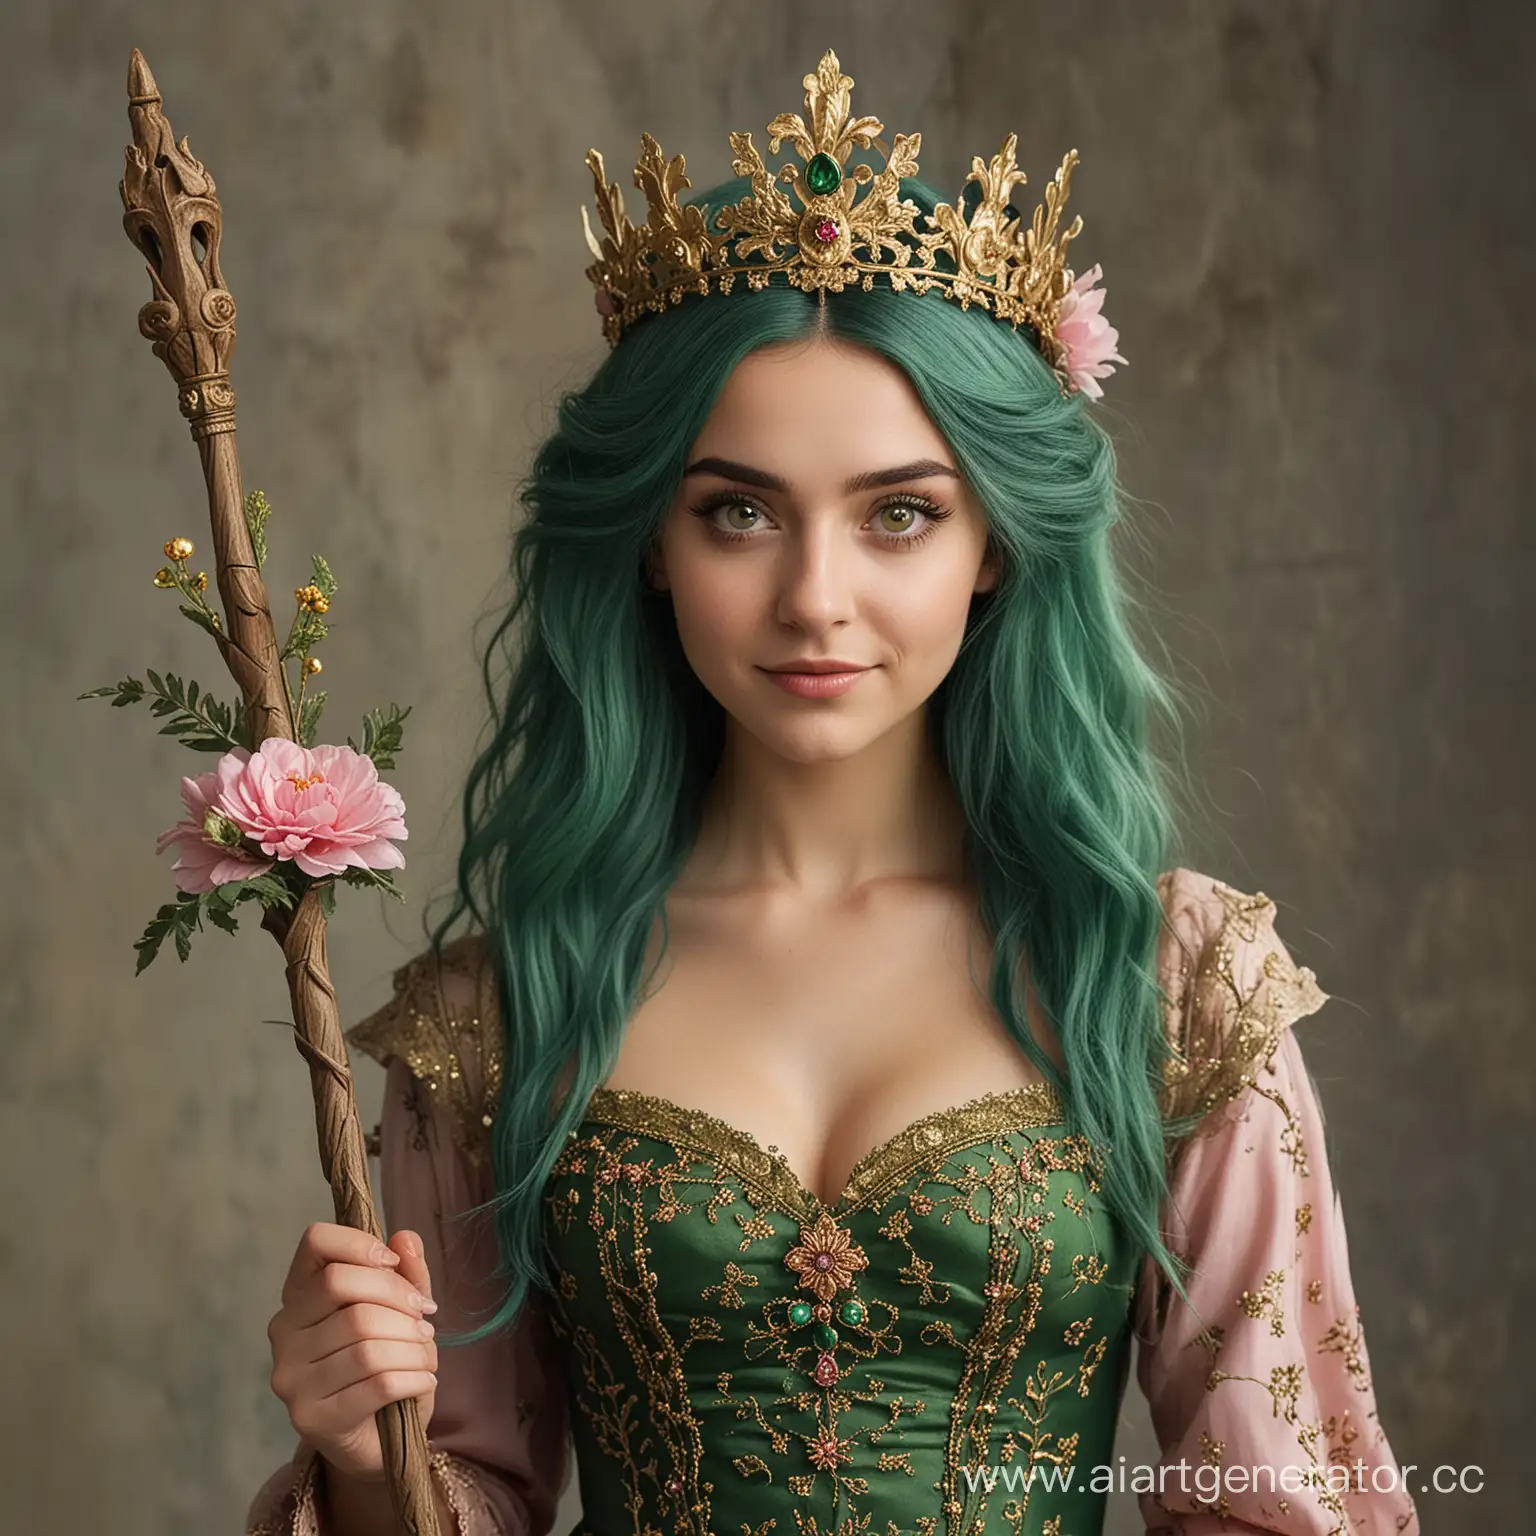 Девушка 25 лет со злобной, хитрой ухмылкой, длинными тёмно-зелёными волосами на которых заколки в виде разных цветков, зелёными глазами, в зелёном платье с золотыми узорами и драгоценными кристаллами, с золотой короной с изумрудами на голове,  с посохом из ствола дуба с розовым цветком в поднятой правой руке 